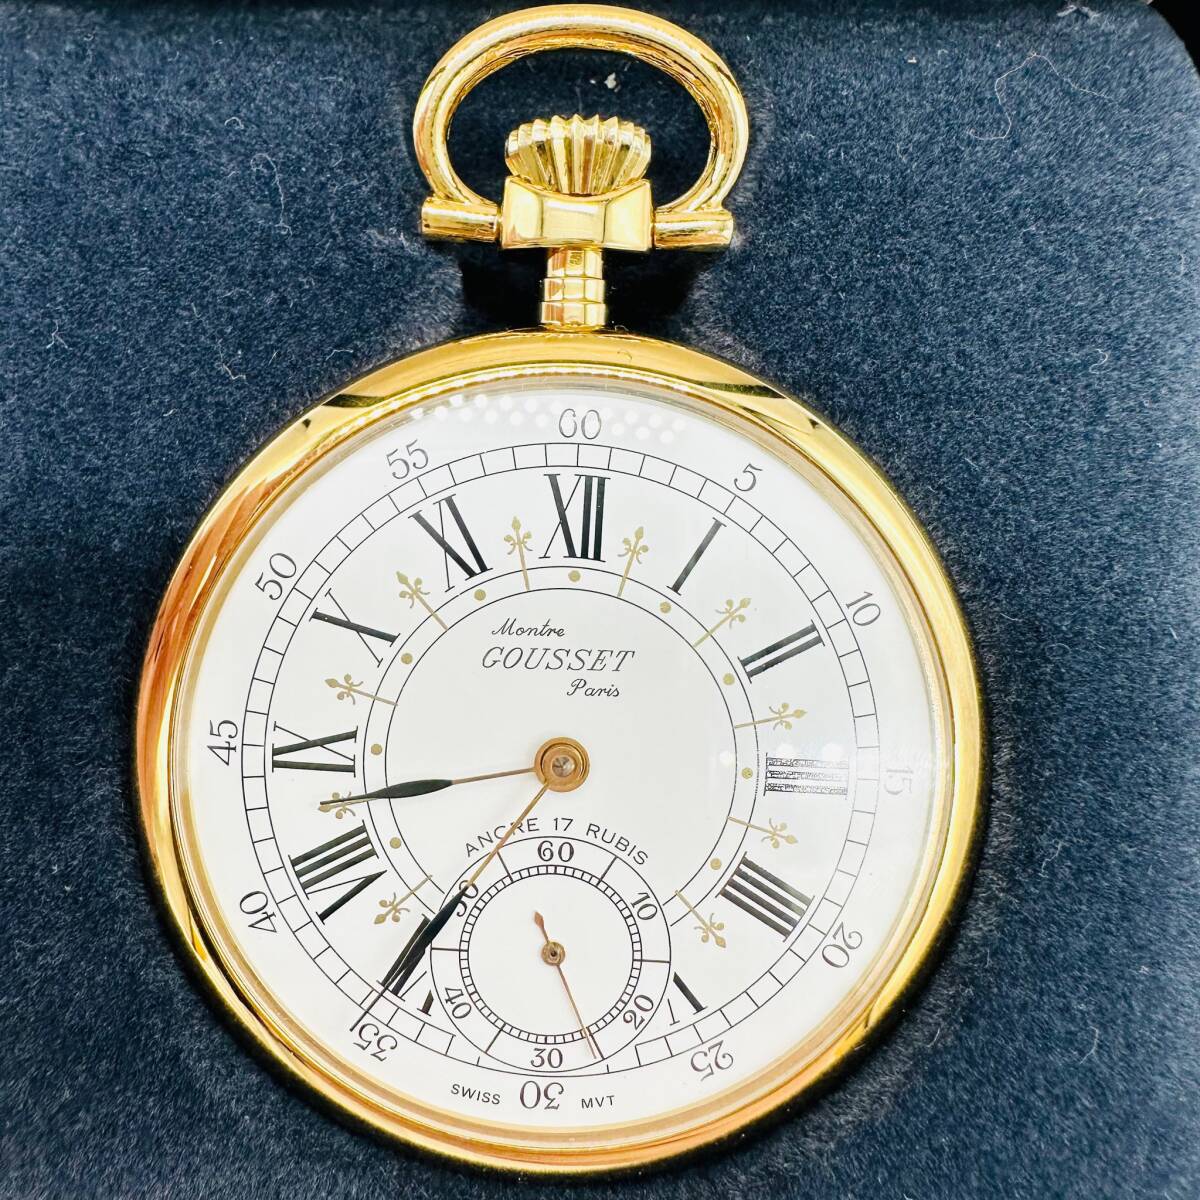 Montre GOUSSET Paris グゼット 手巻き時計 懐中時計 稼働品 スモセコ 箱付き かわいい スイス 1円出品 コレクション アクセサリー 3865_画像2